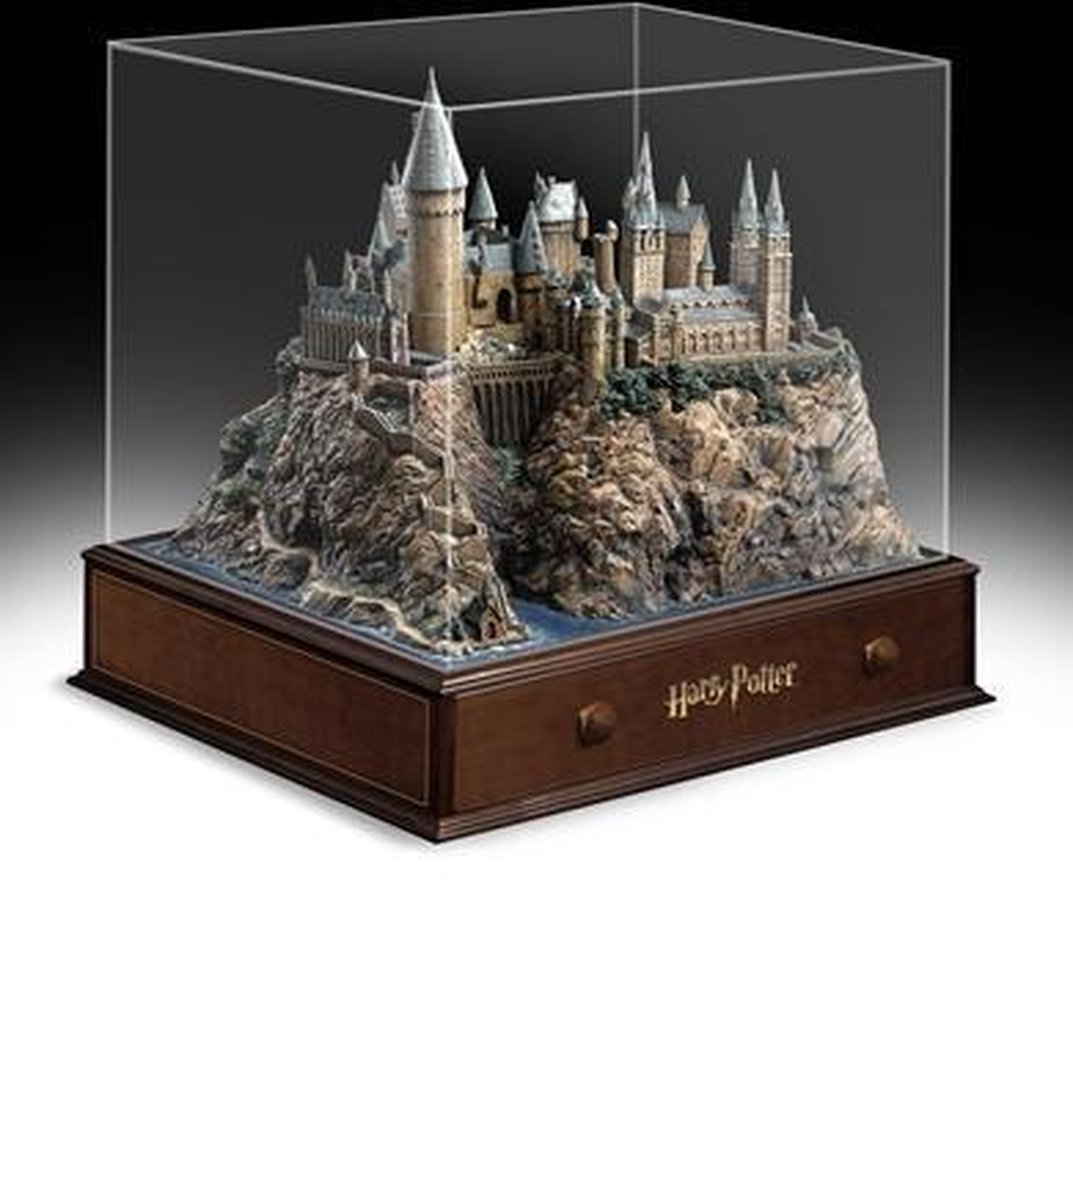 Harry Potter : le Château de Poudlard est à vendre et il est en promotion !  